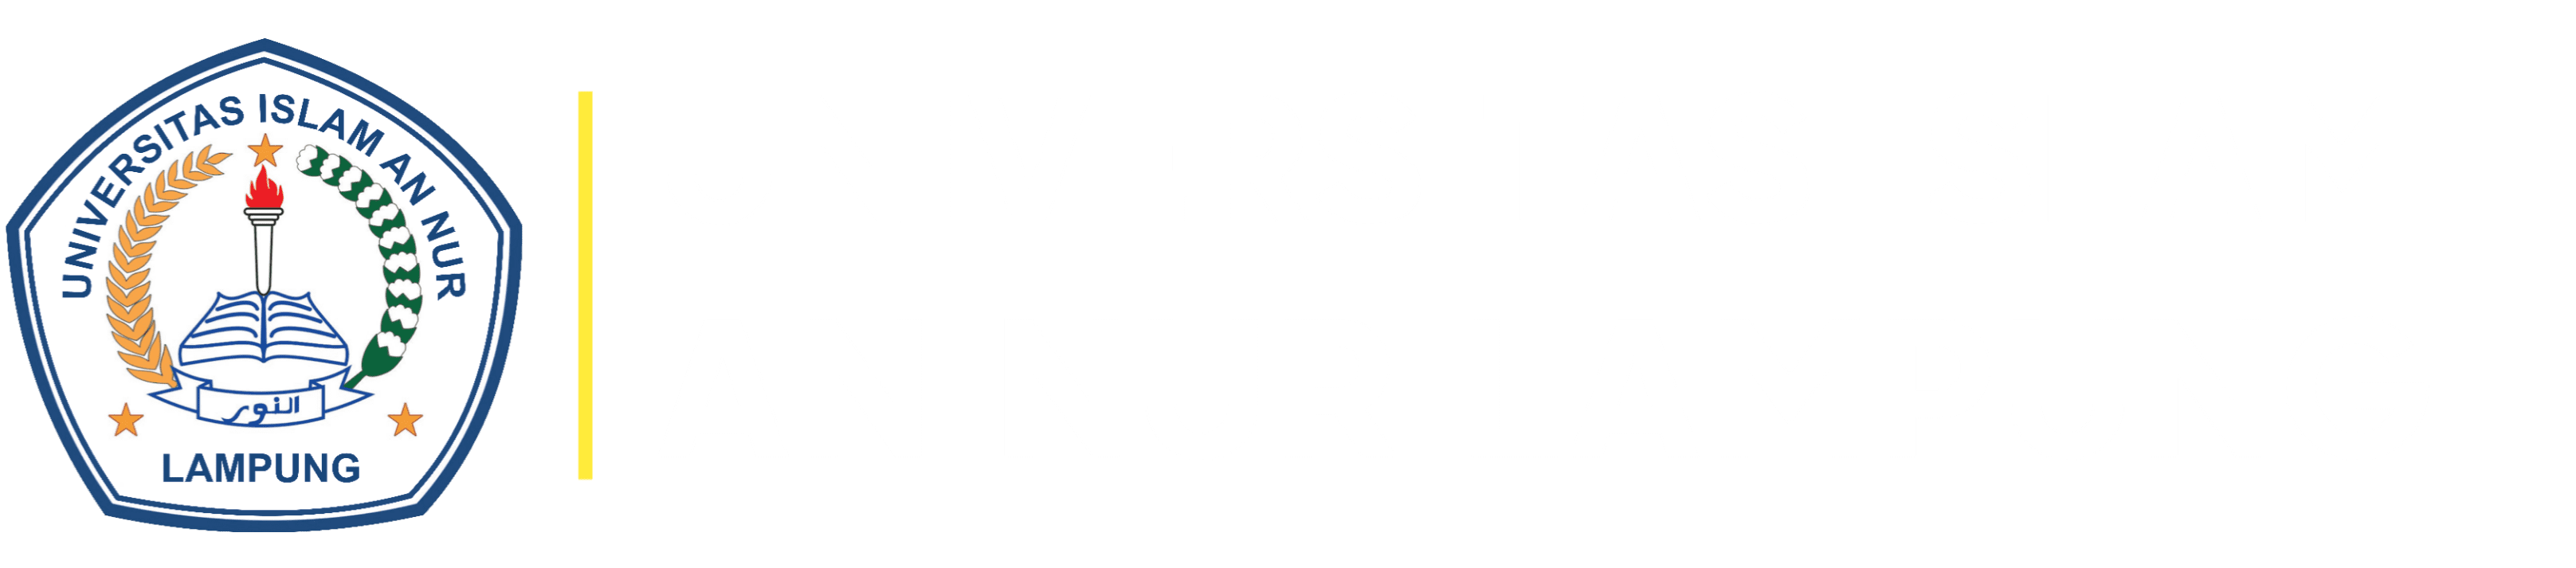 Universitas Islam An Nur Lampung